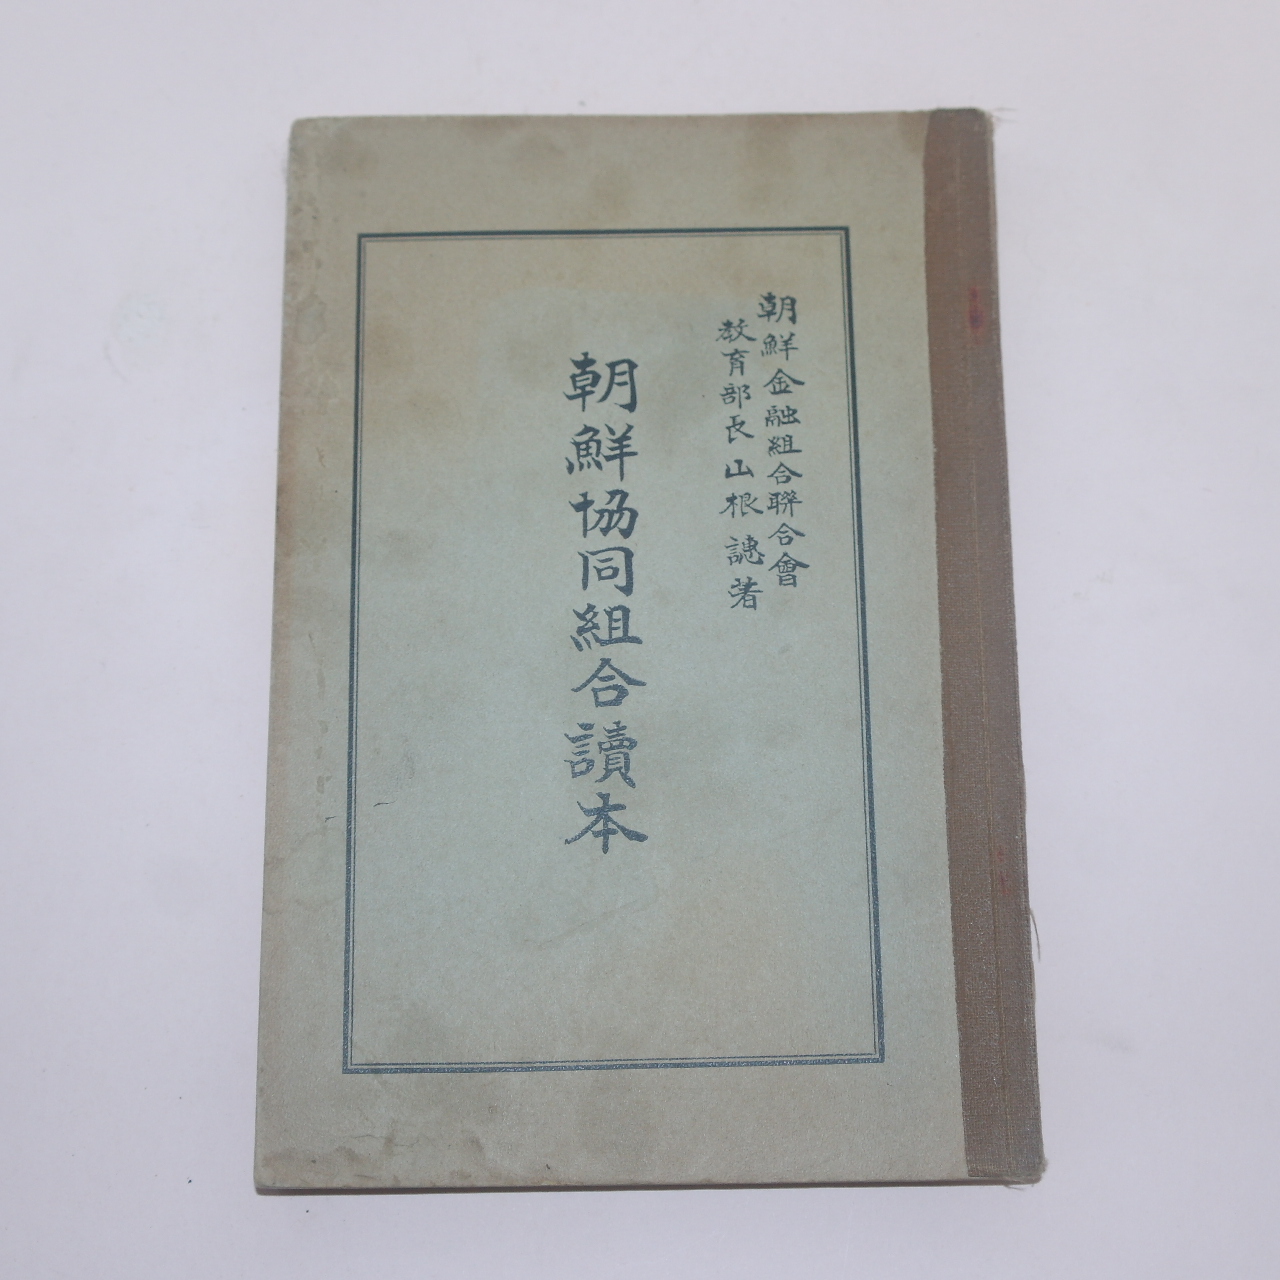 1938년 조선협동조합독본(朝鮮協同組合讀本)